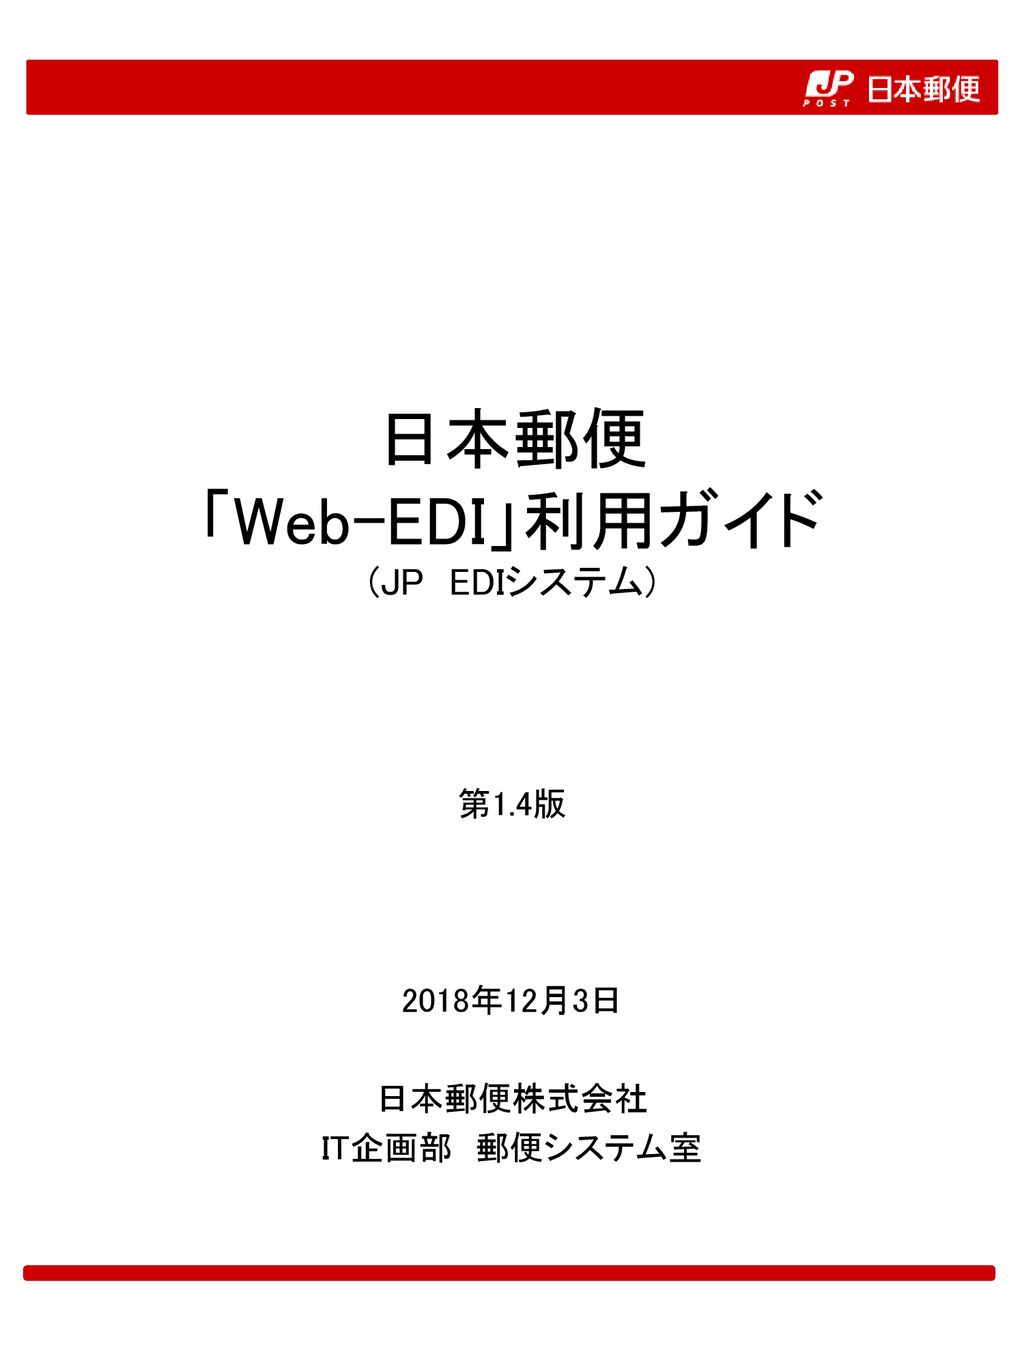 日本郵便 「Web-EDI」利用ガイド (JP EDIシステム)